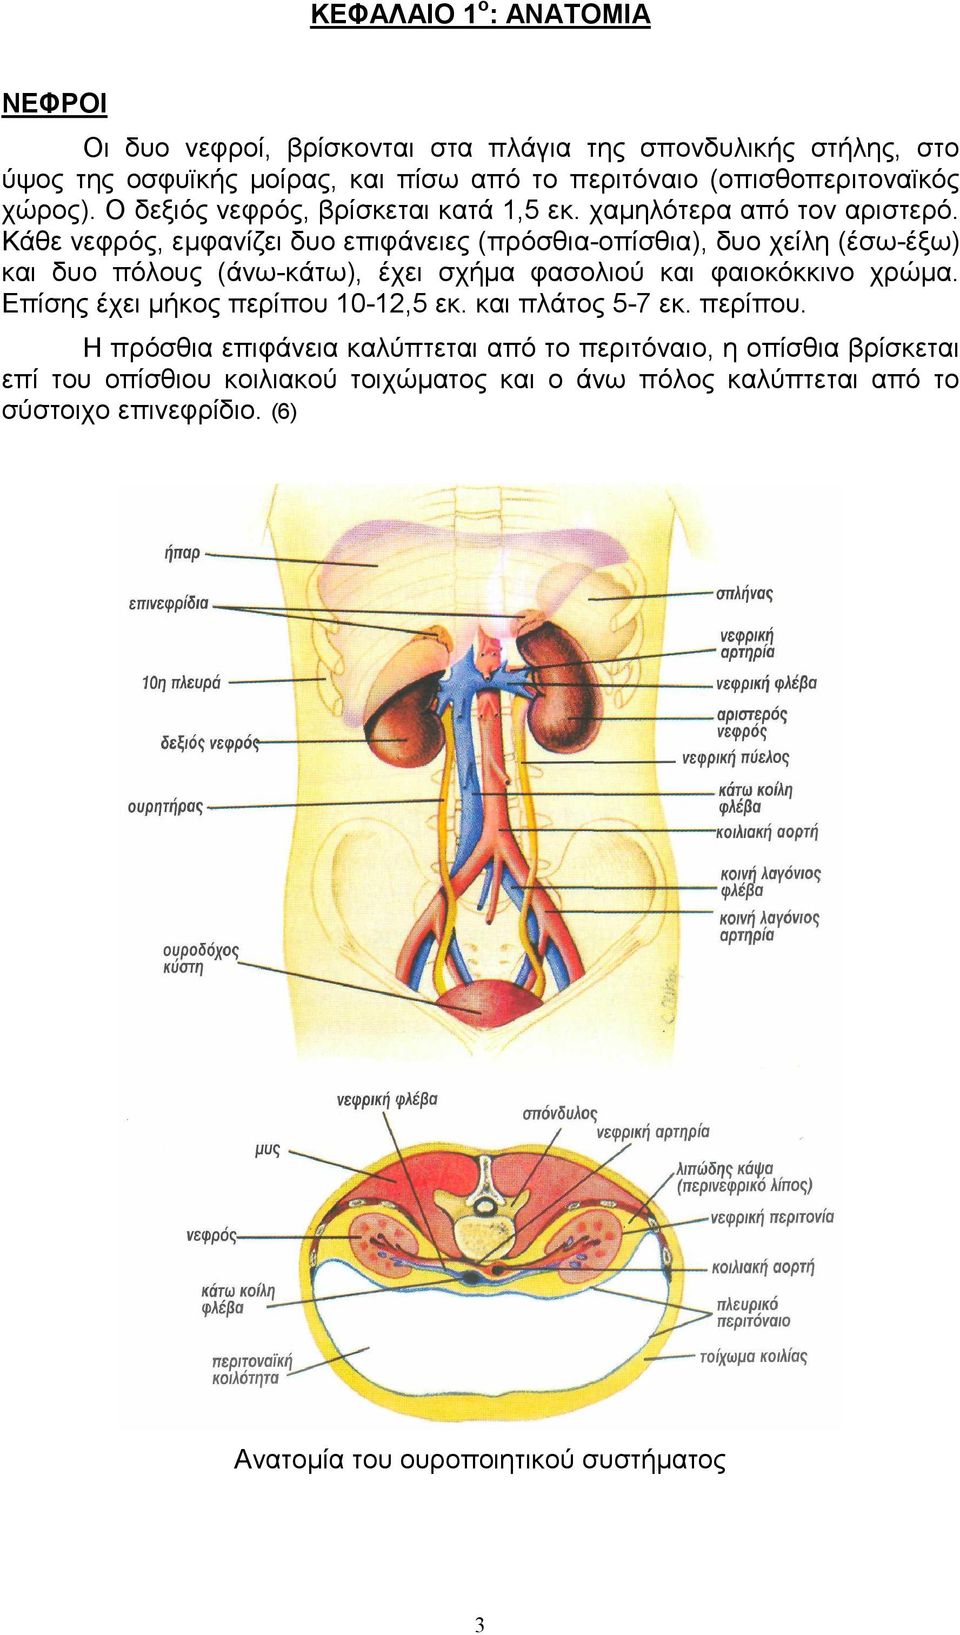 Κάθε νεφρός, εµφανίζει δυο επιφάνειες (πρόσθια-οπίσθια), δυο χείλη (έσω-έξω) και δυο πόλους (άνω-κάτω), έχει σχήµα φασολιού και φαιοκόκκινο χρώµα.